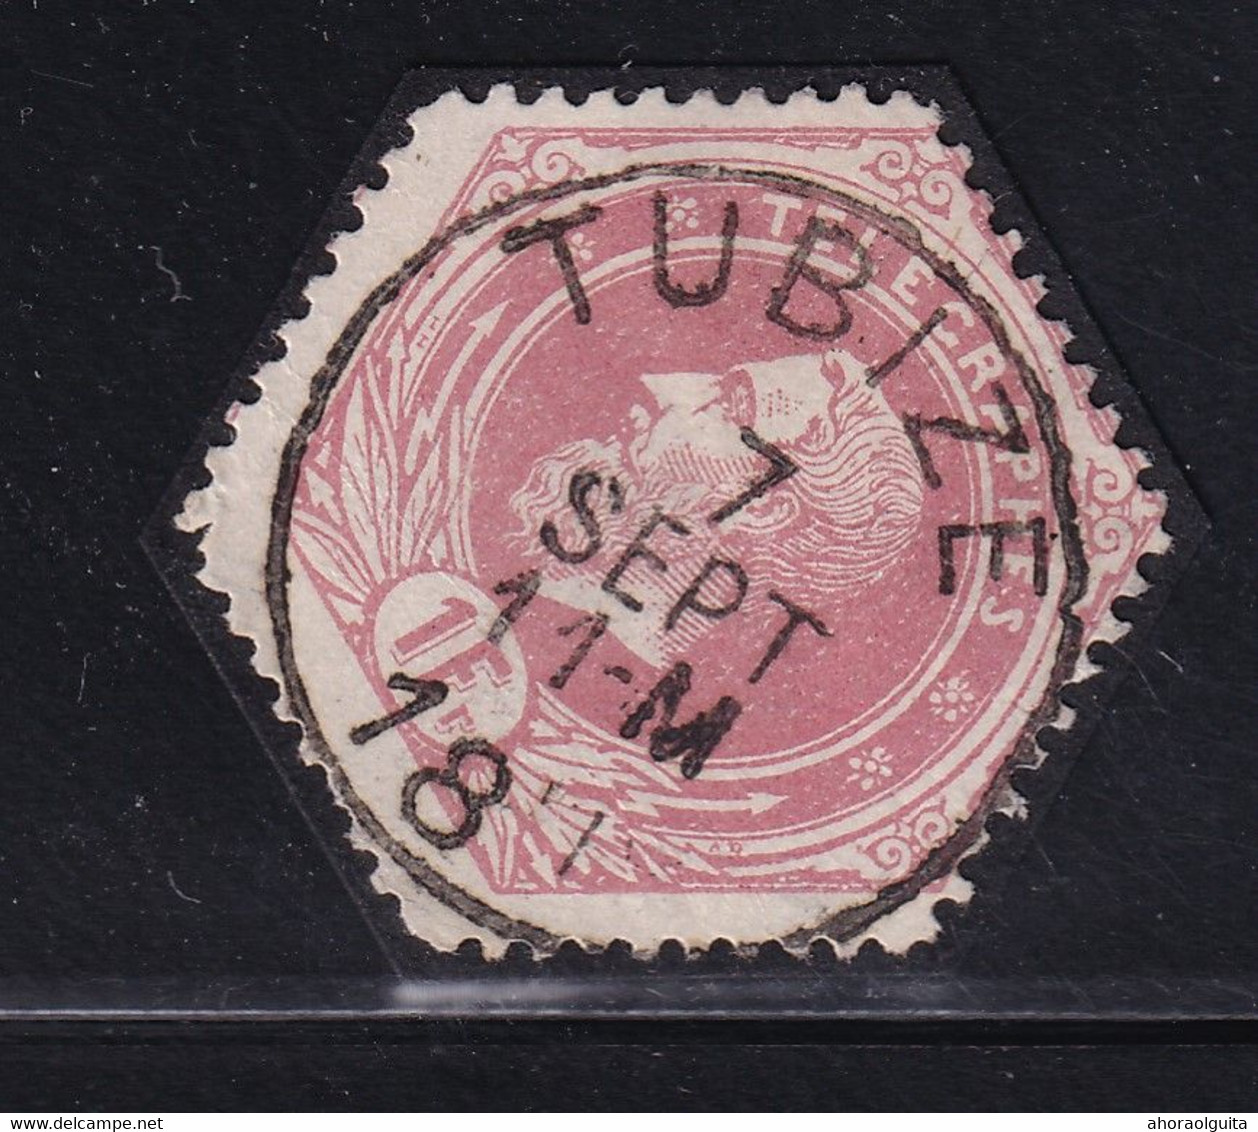 DDDD 433  --  Timbre Télégraphe Cachet Postal Simple Cercle TUBIZE 1891 - Frappe LUXE - Francobolli Telegrafici [TG]